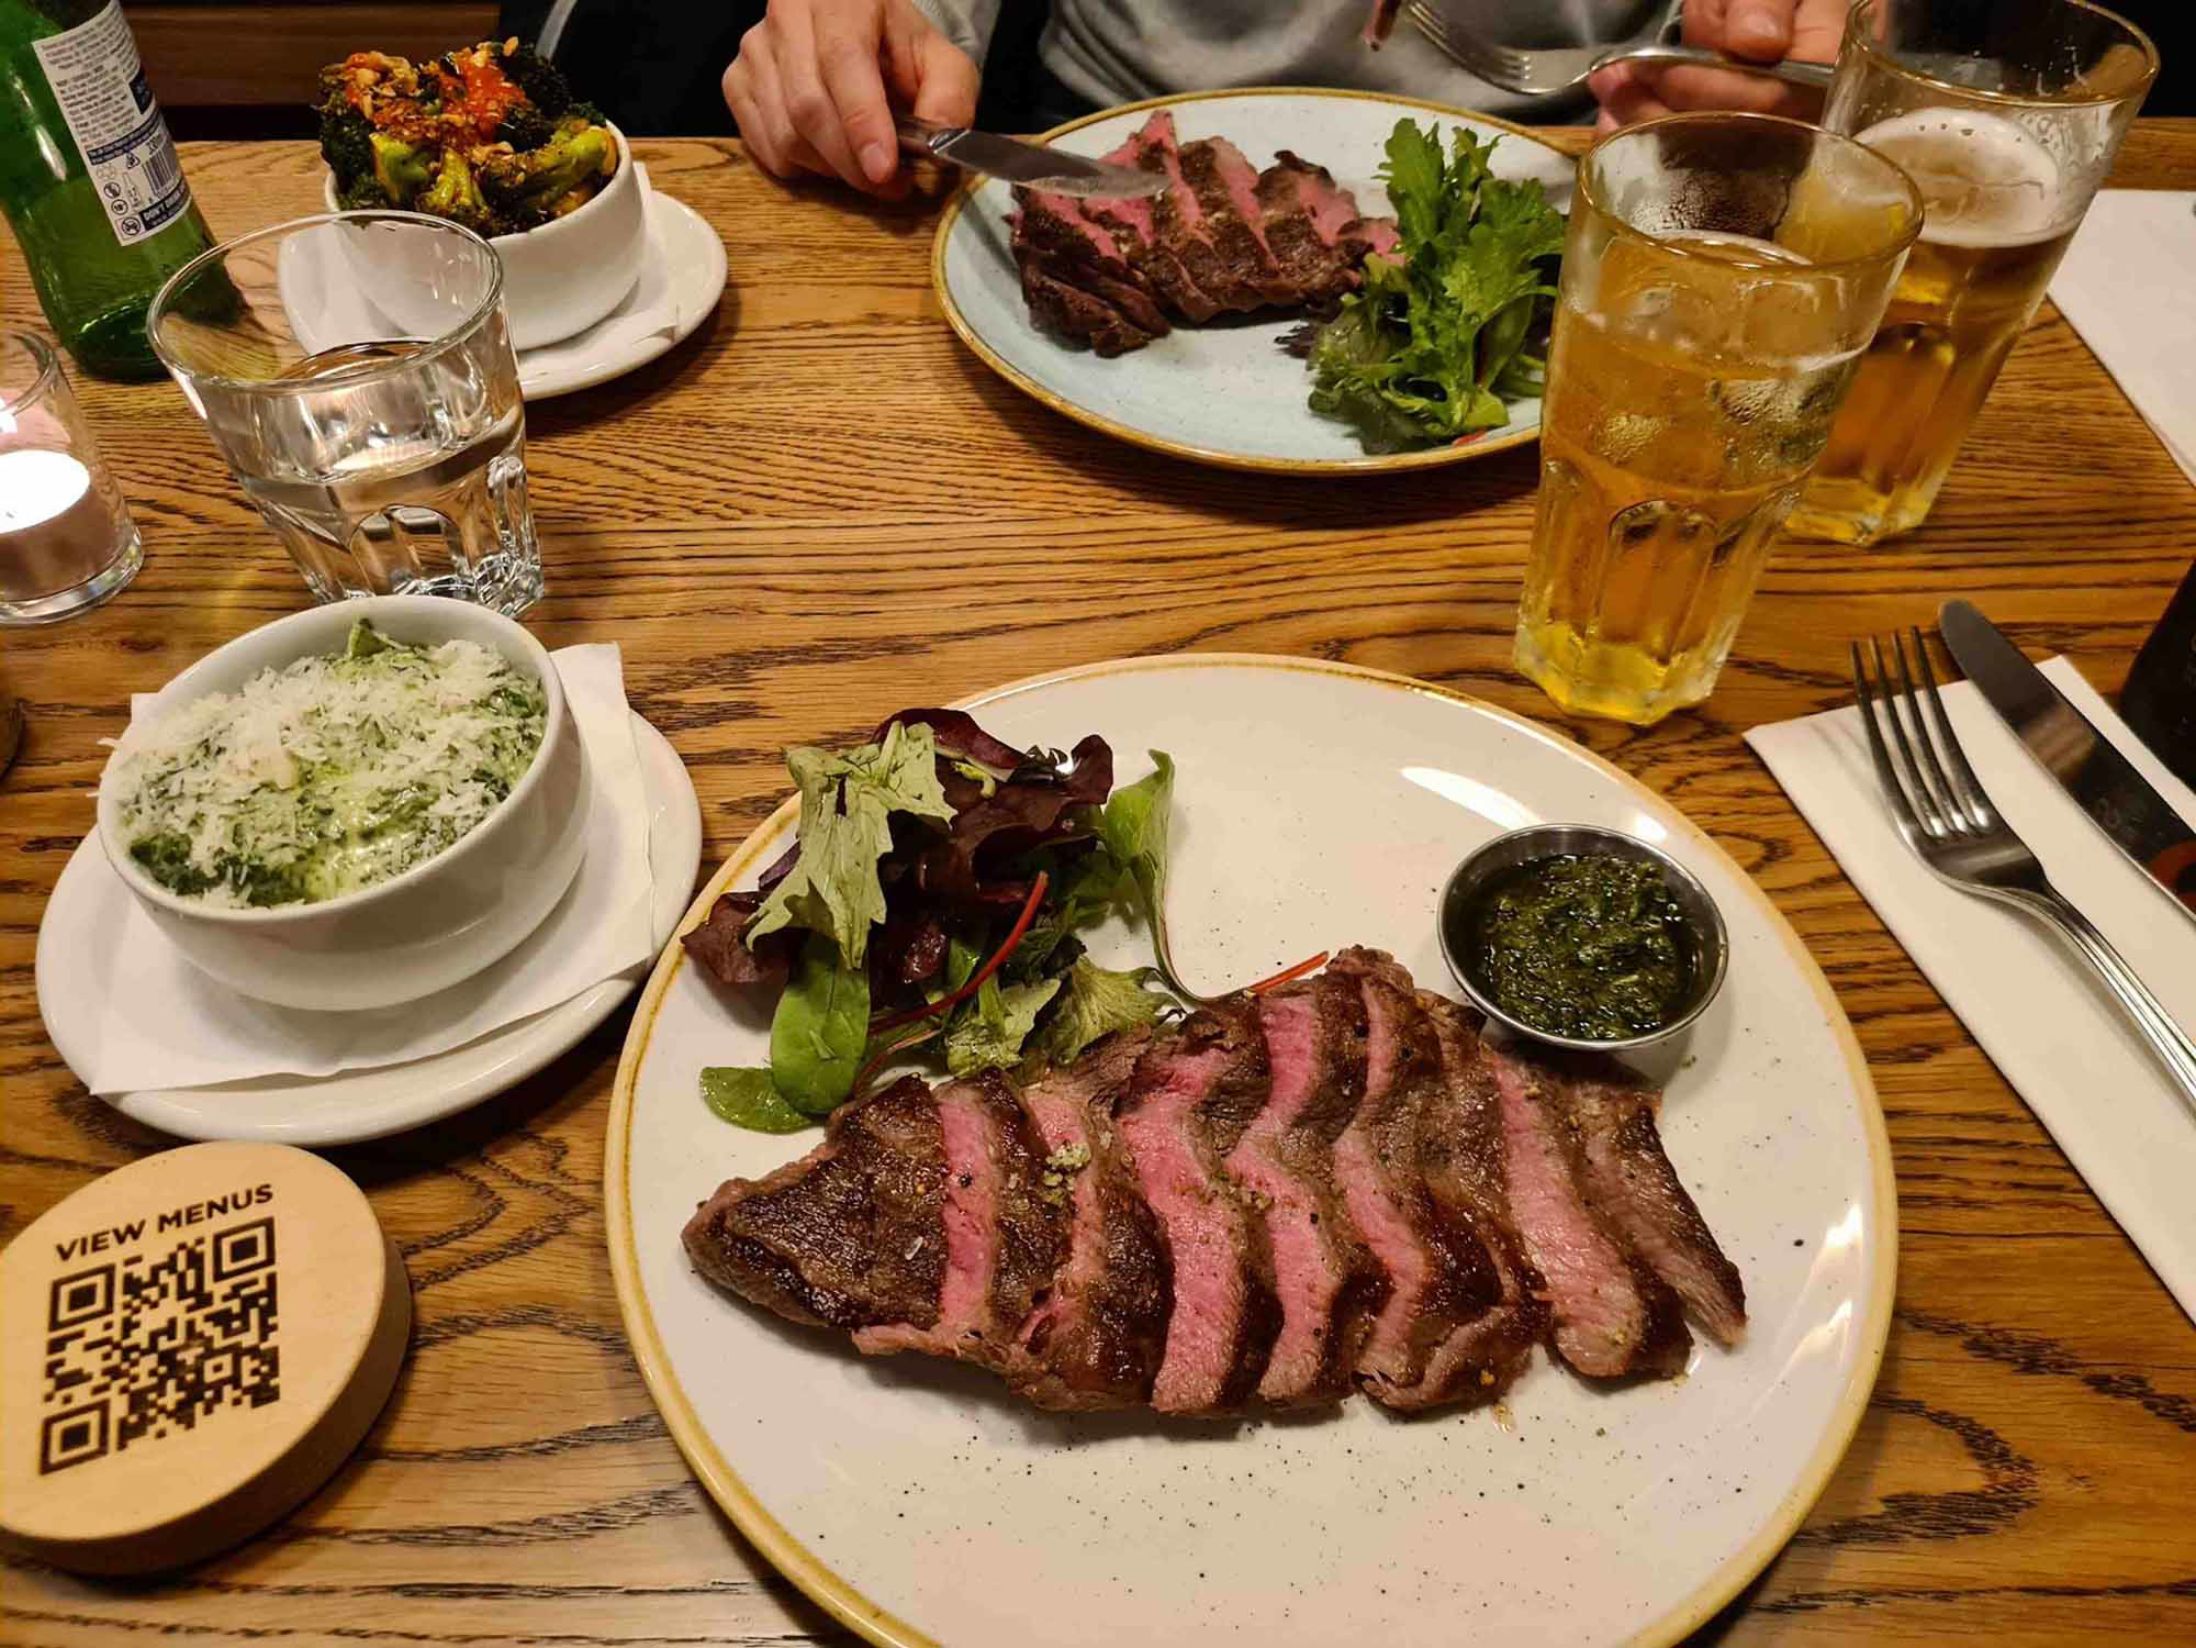 Featherblade Steak Restaurant - Best Restaurants in Dublin